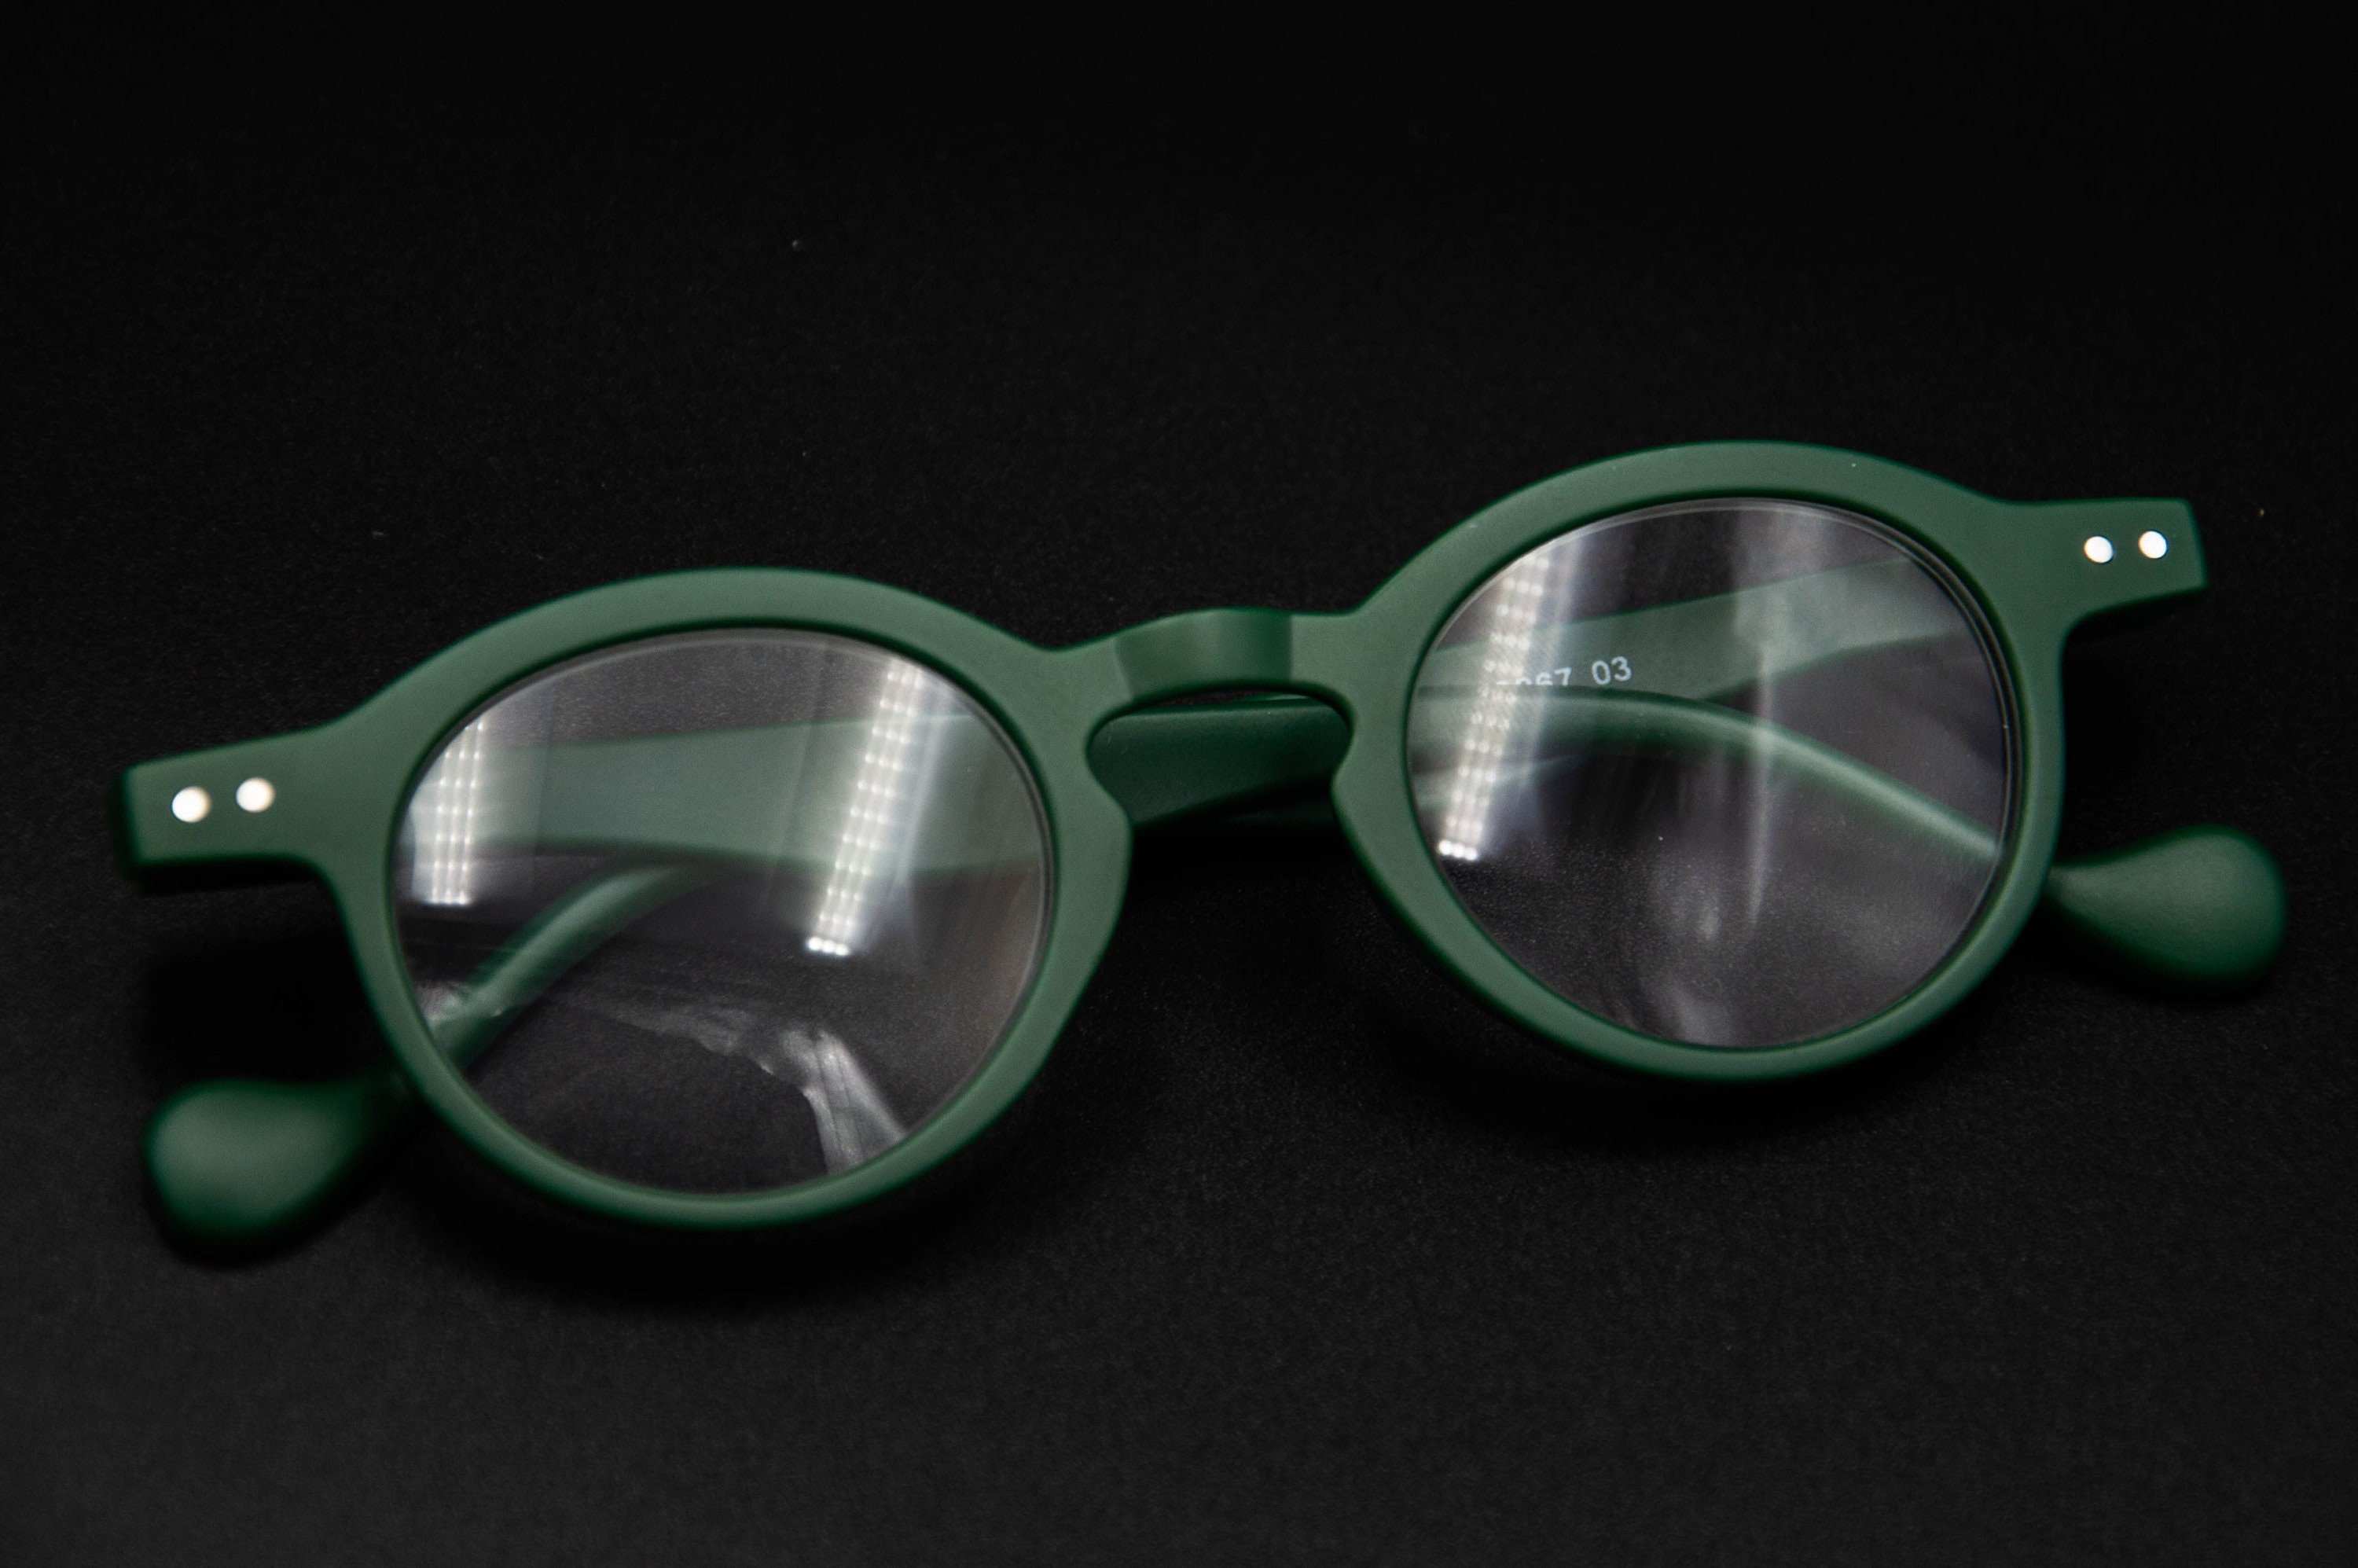 Beschikbaar in +1 +1.50 +2 +2.50 +3 en +3.50 Geschikt voor zowel dames als heren. Mat groene ronde leesbril Accessoires Zonnebrillen & Eyewear Leesbrillen Matt Green Reading Glasses 